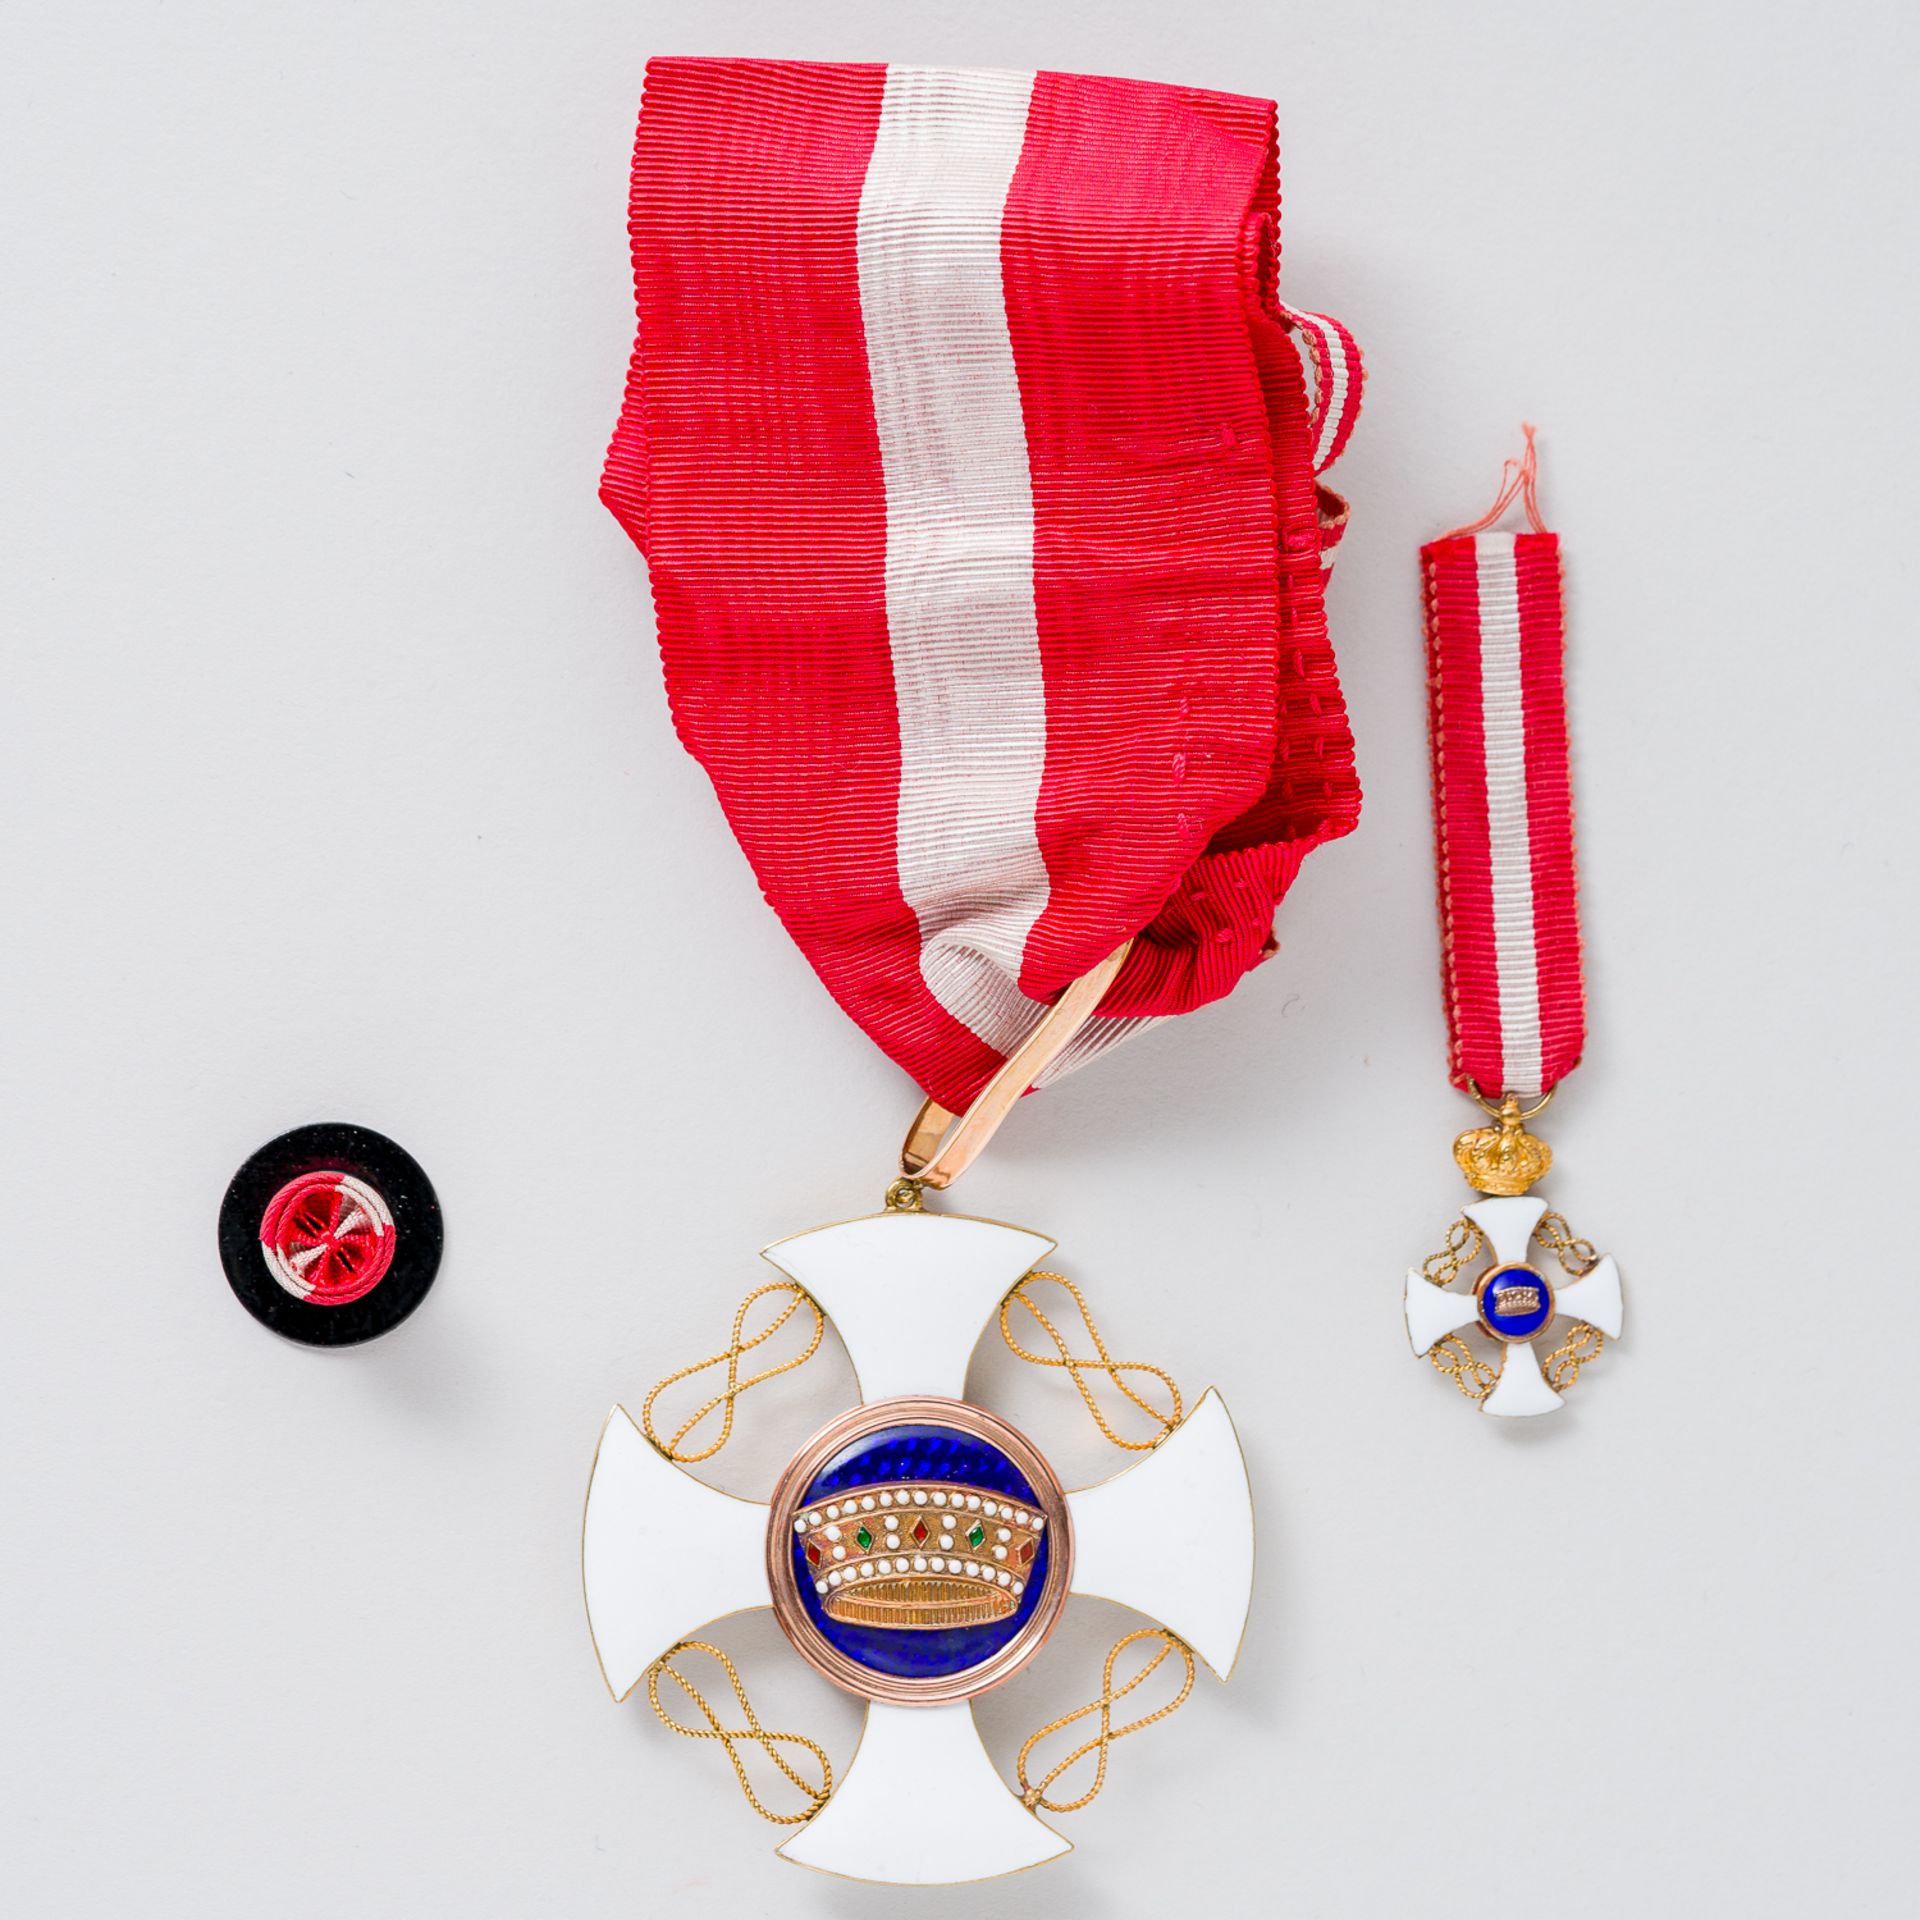 Orden der Krone von Italien Ordine della Corona d'Italia Kommandeurskreuz am Band im Etui - Image 2 of 4